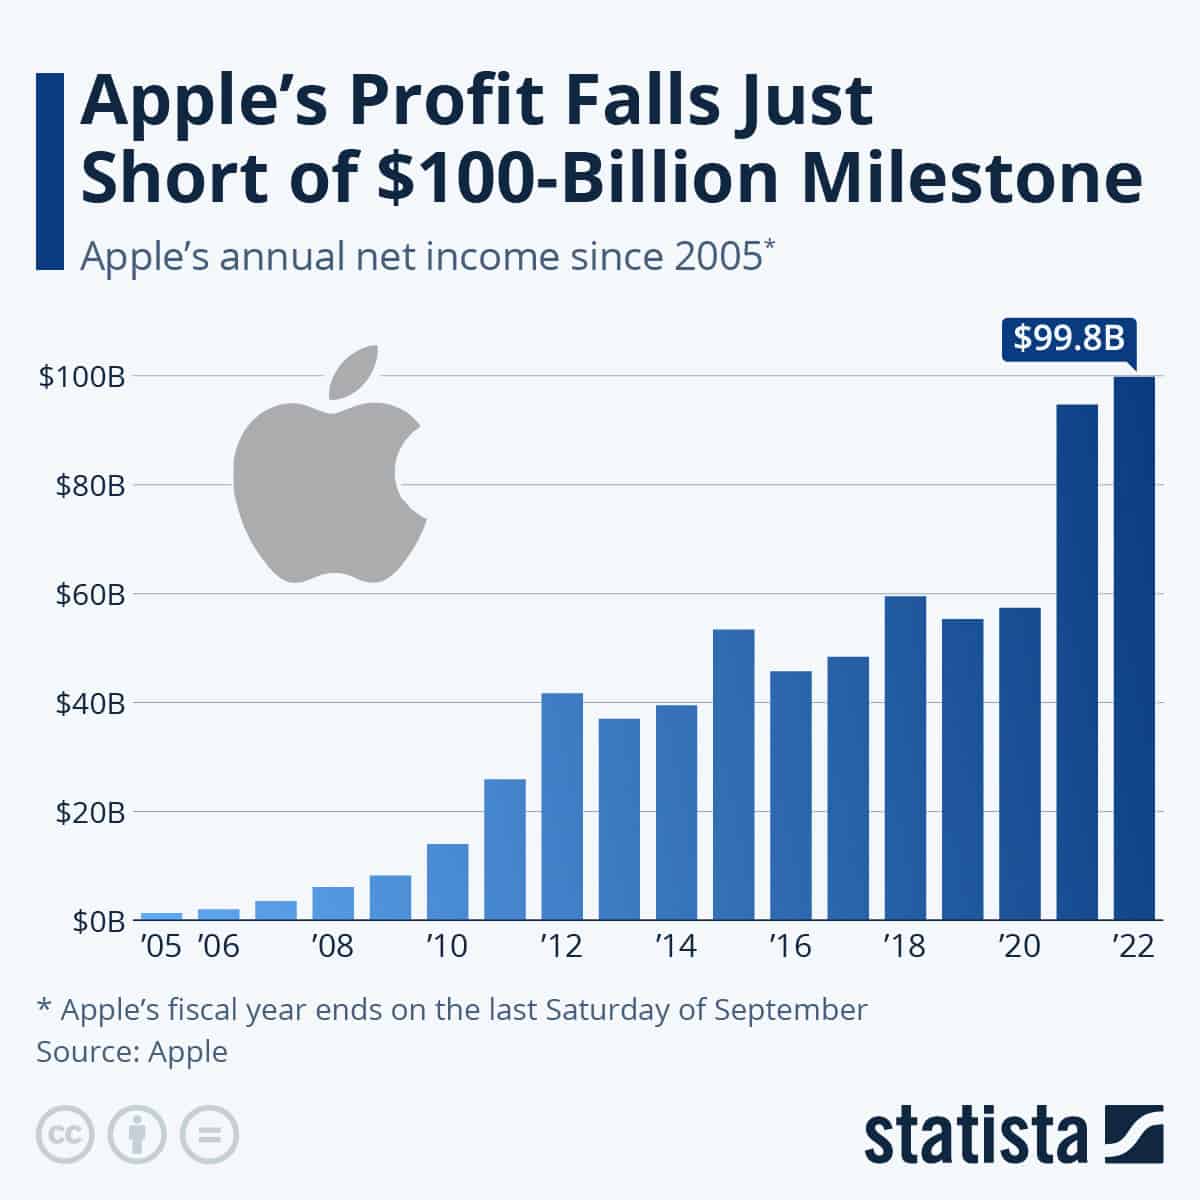 diagramm zur Gewinnentwicklung von apple